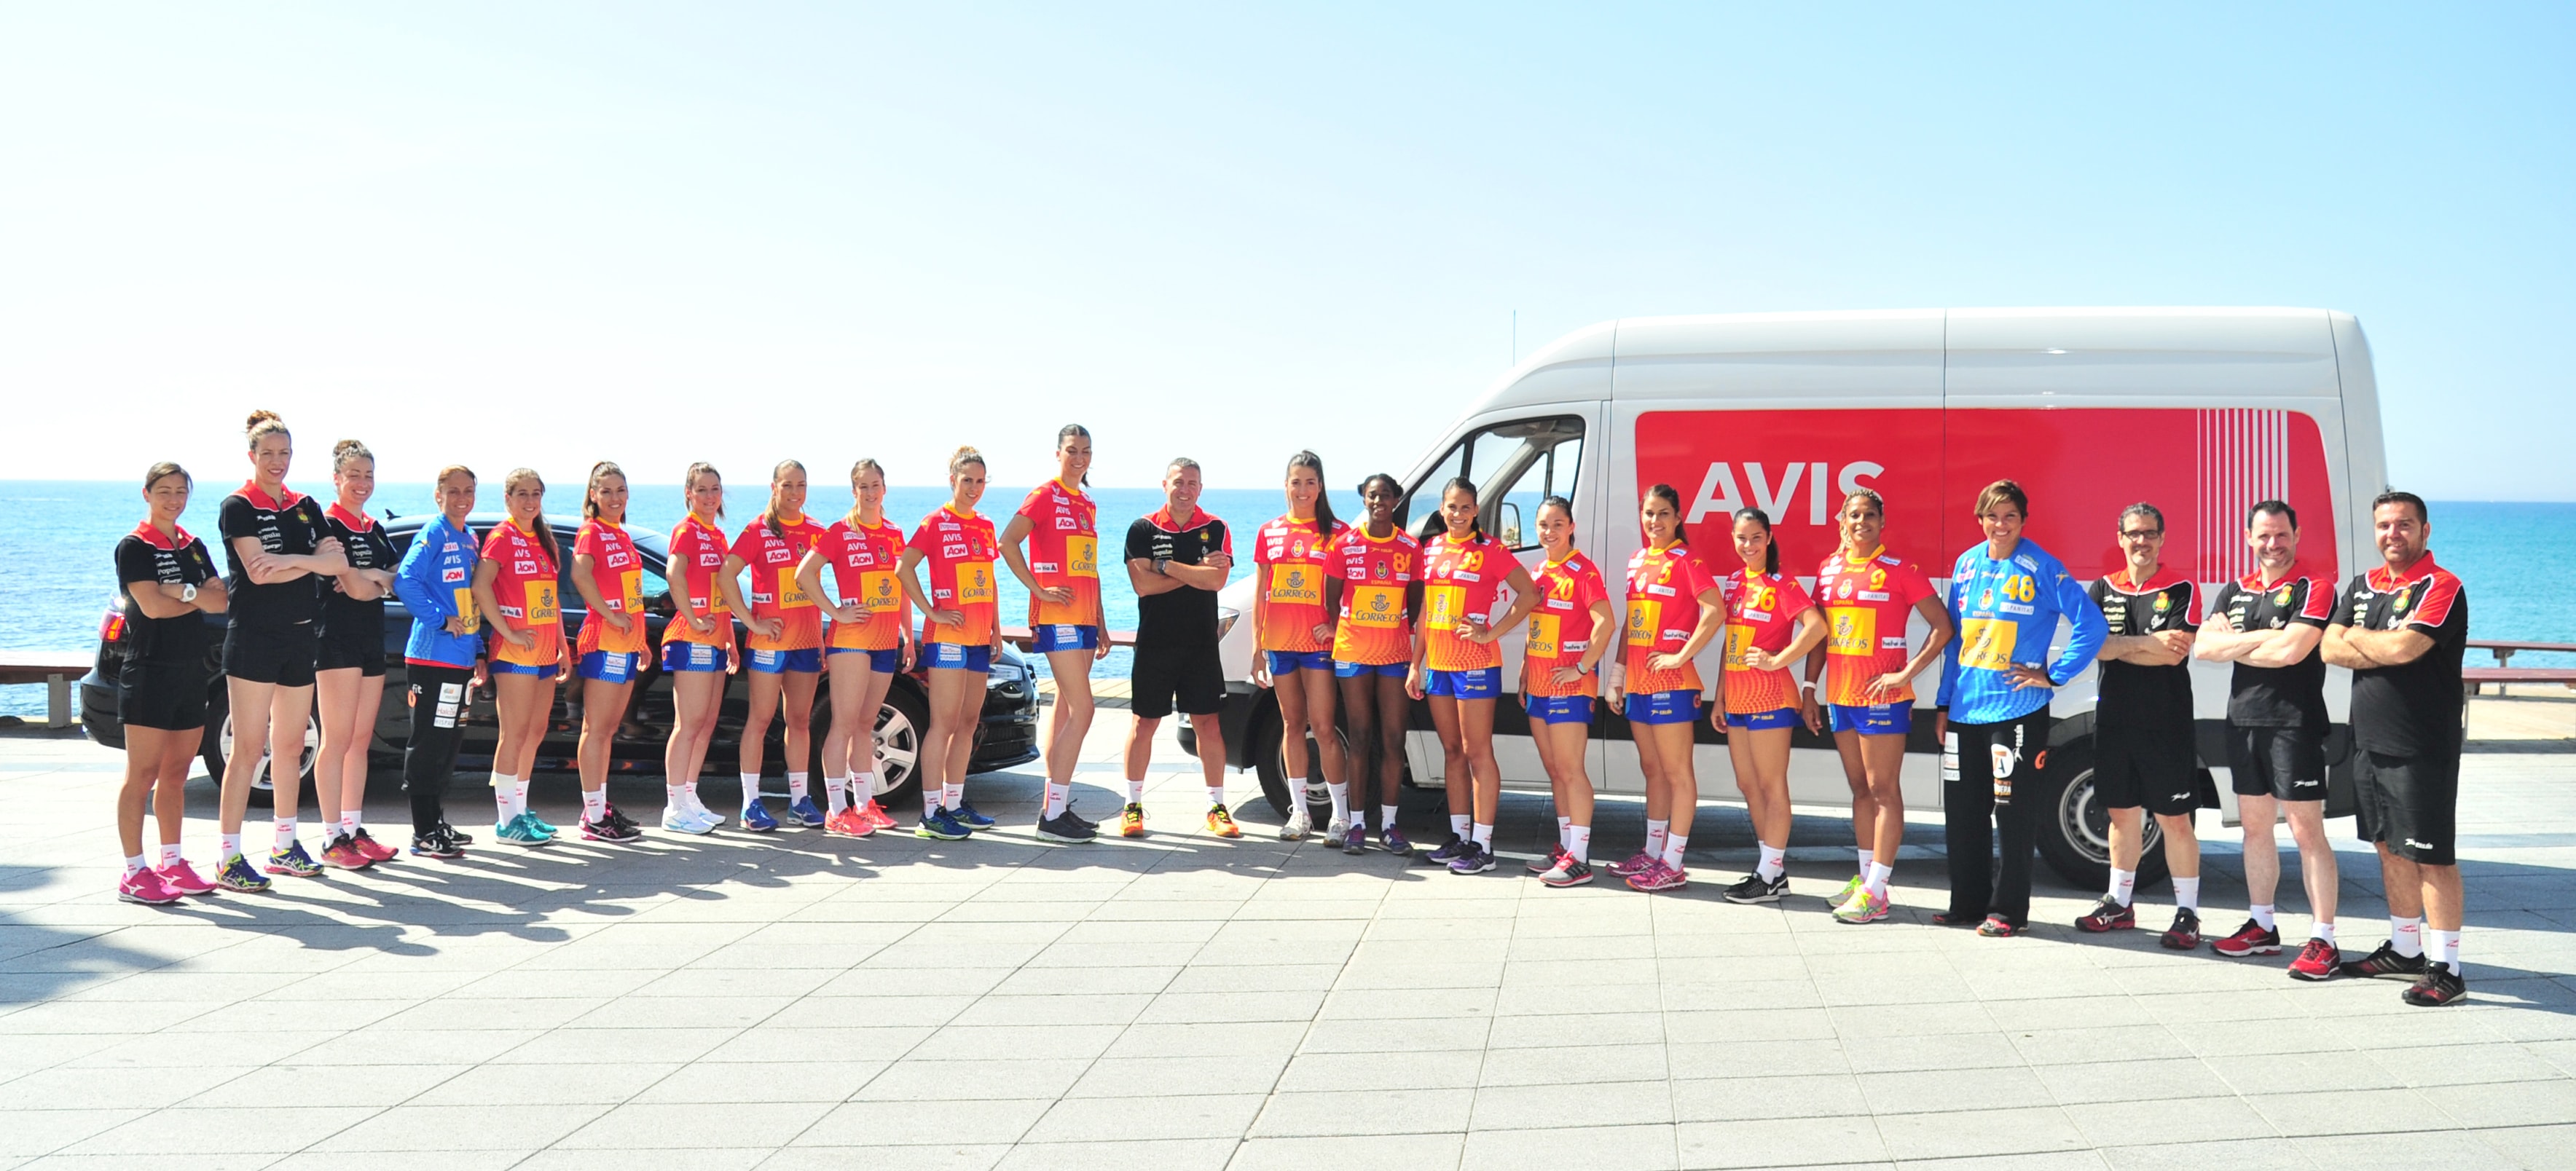 Die Frauen-Handballnationalmannschaft aus Spanien